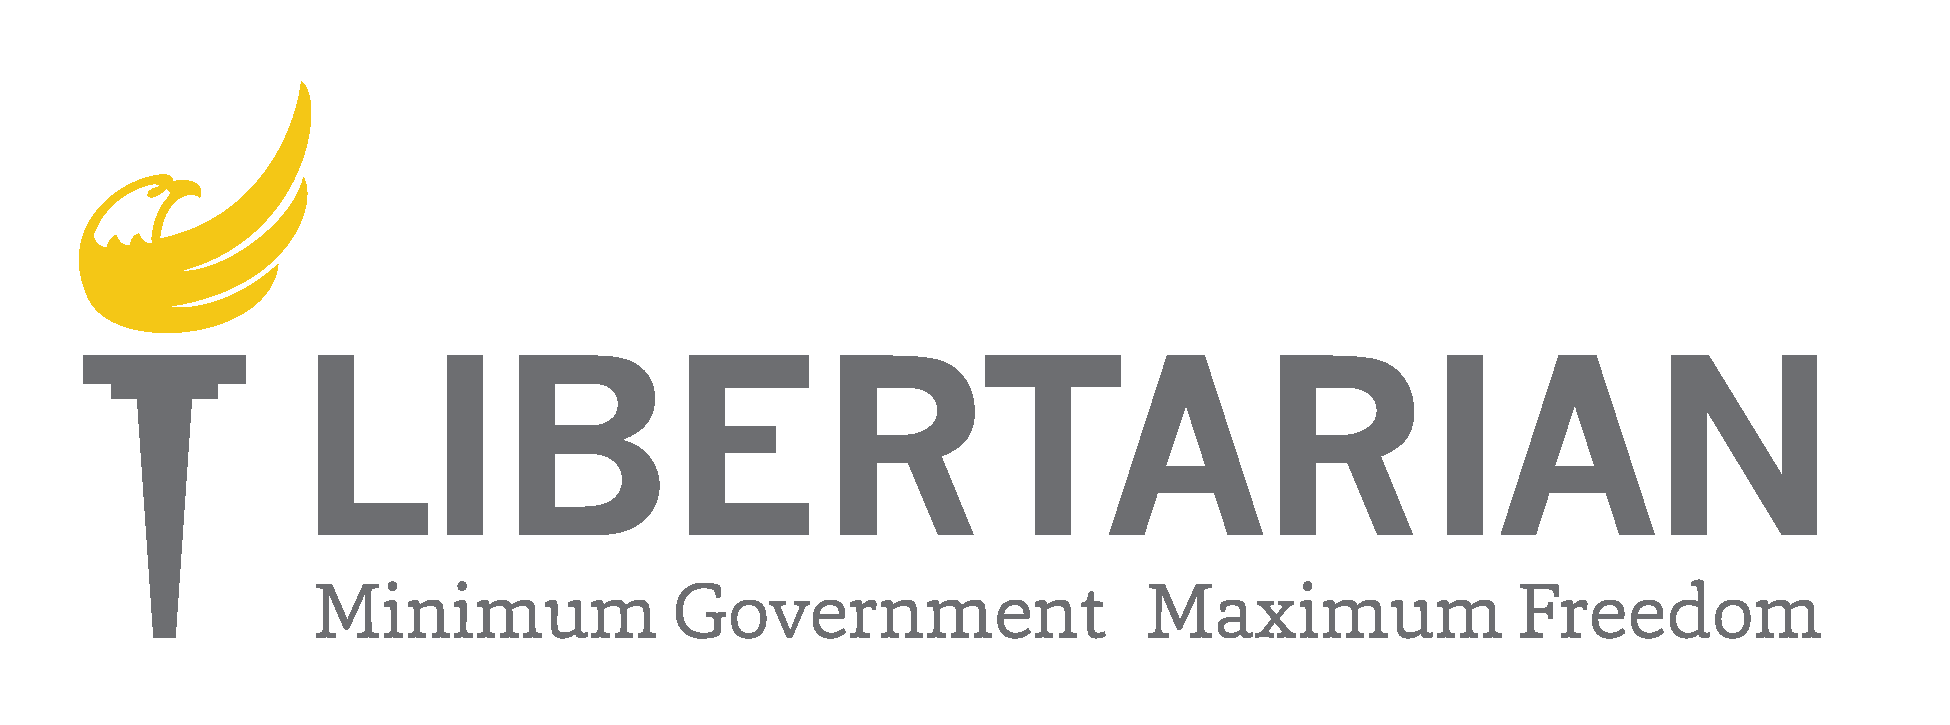 LP-Libertarian-Logo